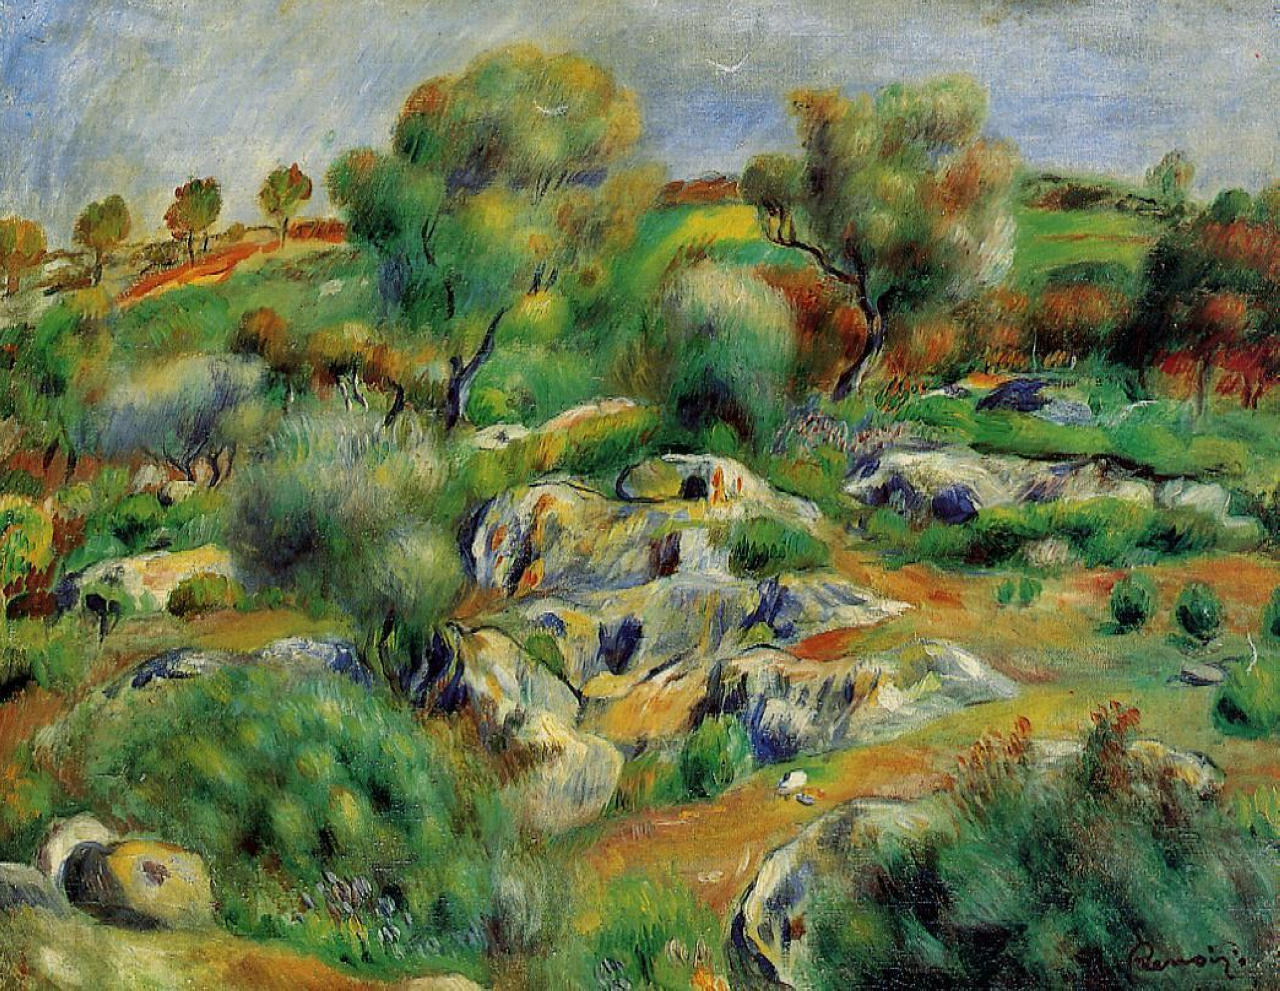 Breton Landscape - Pierre-Auguste Renoir painting on canvas